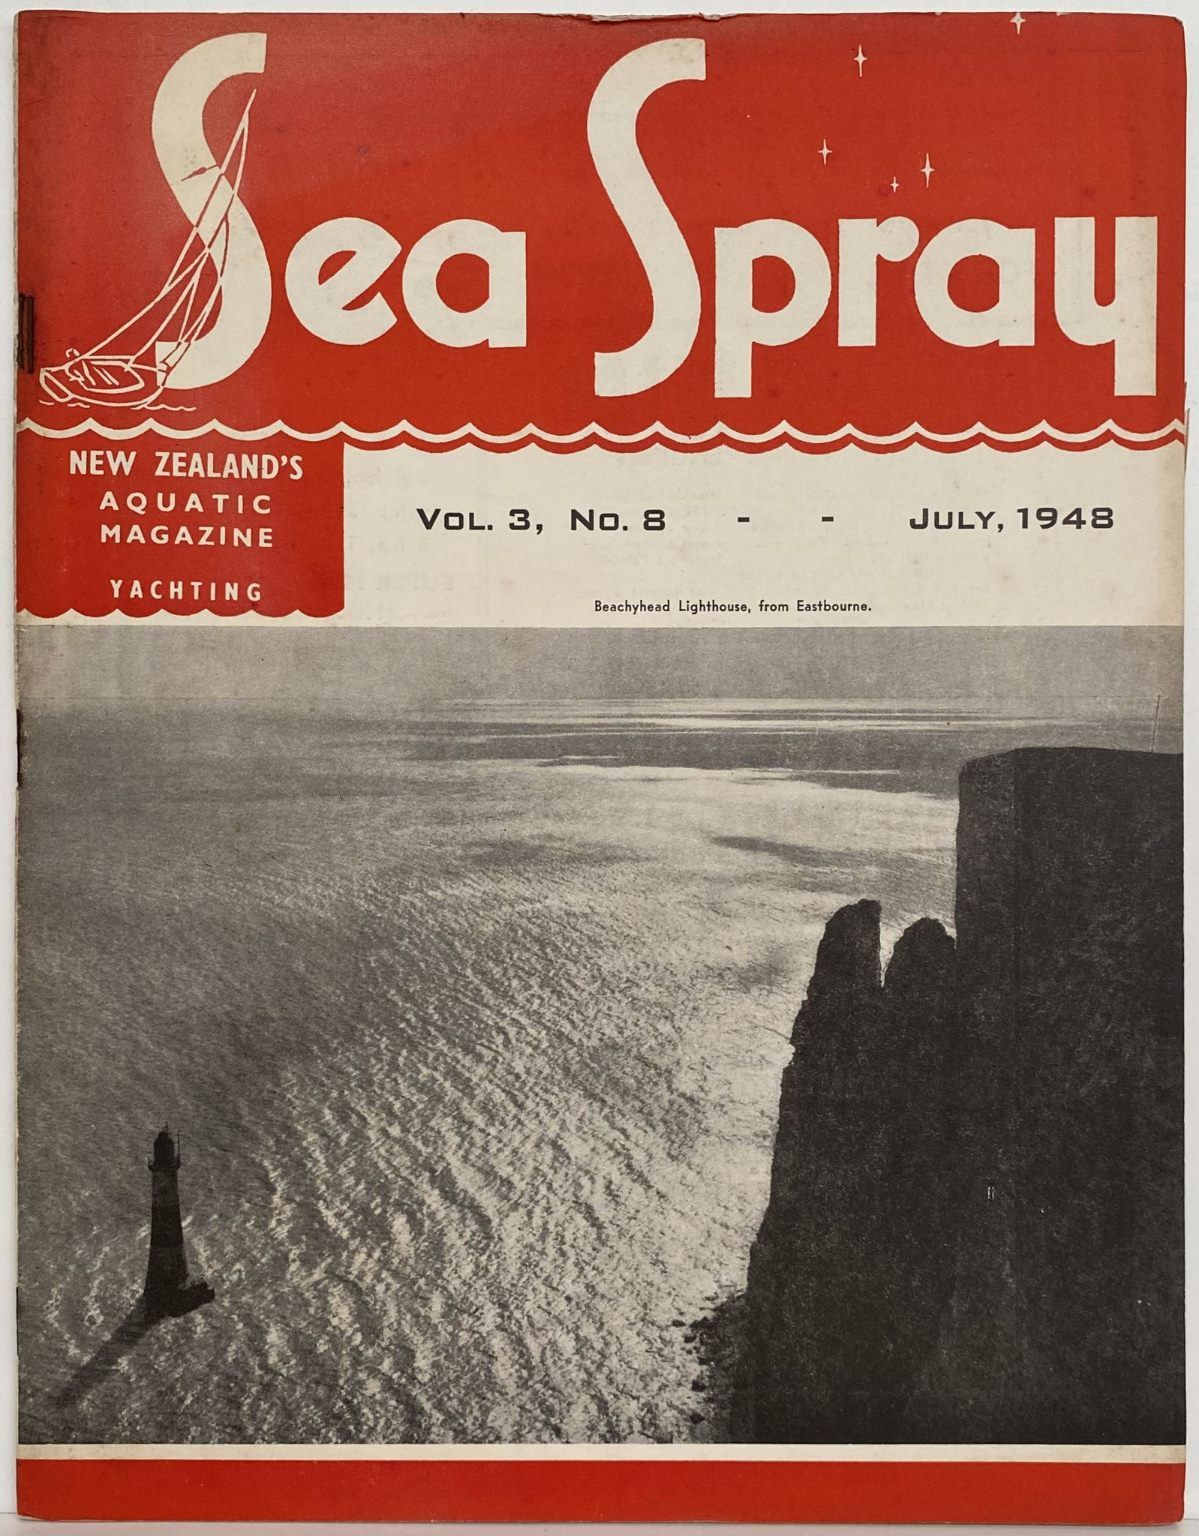 VINTAGE MAGAZINE: Sea Spray - Vol. 3, No. 8 - July 1948